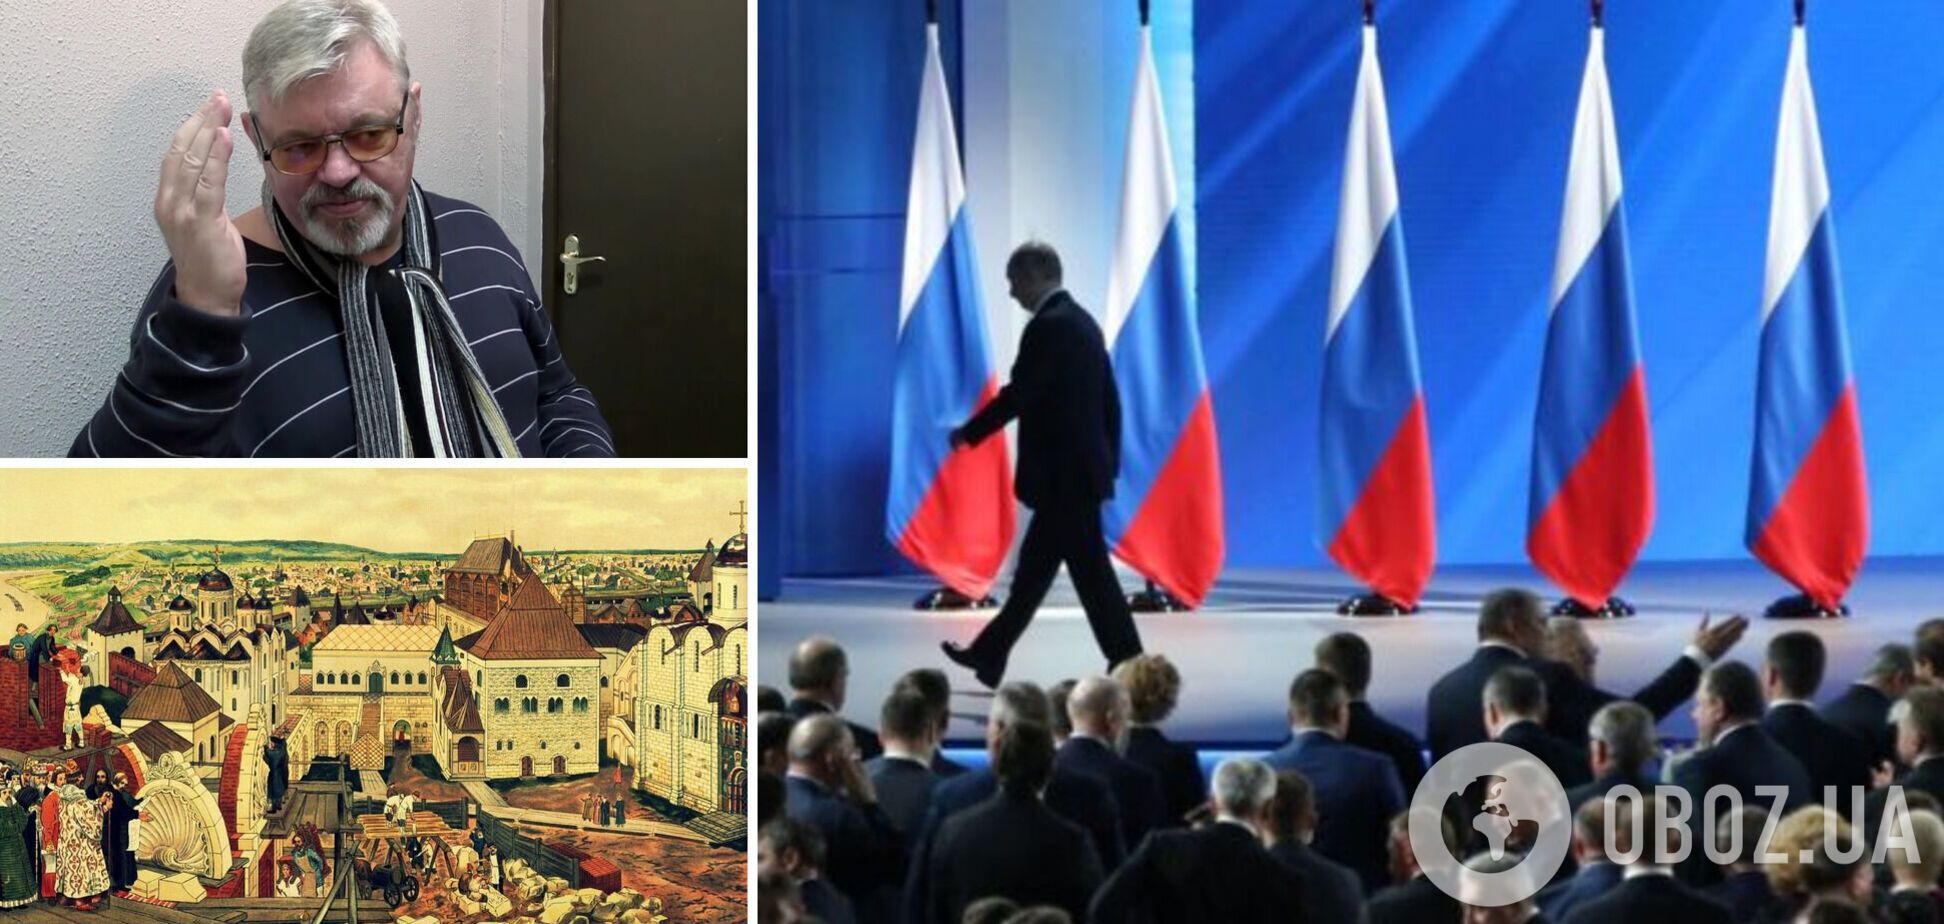 Медовар: Путин уходит из власти на крови, Россия возвращается в границы Московского княжества. Интервью